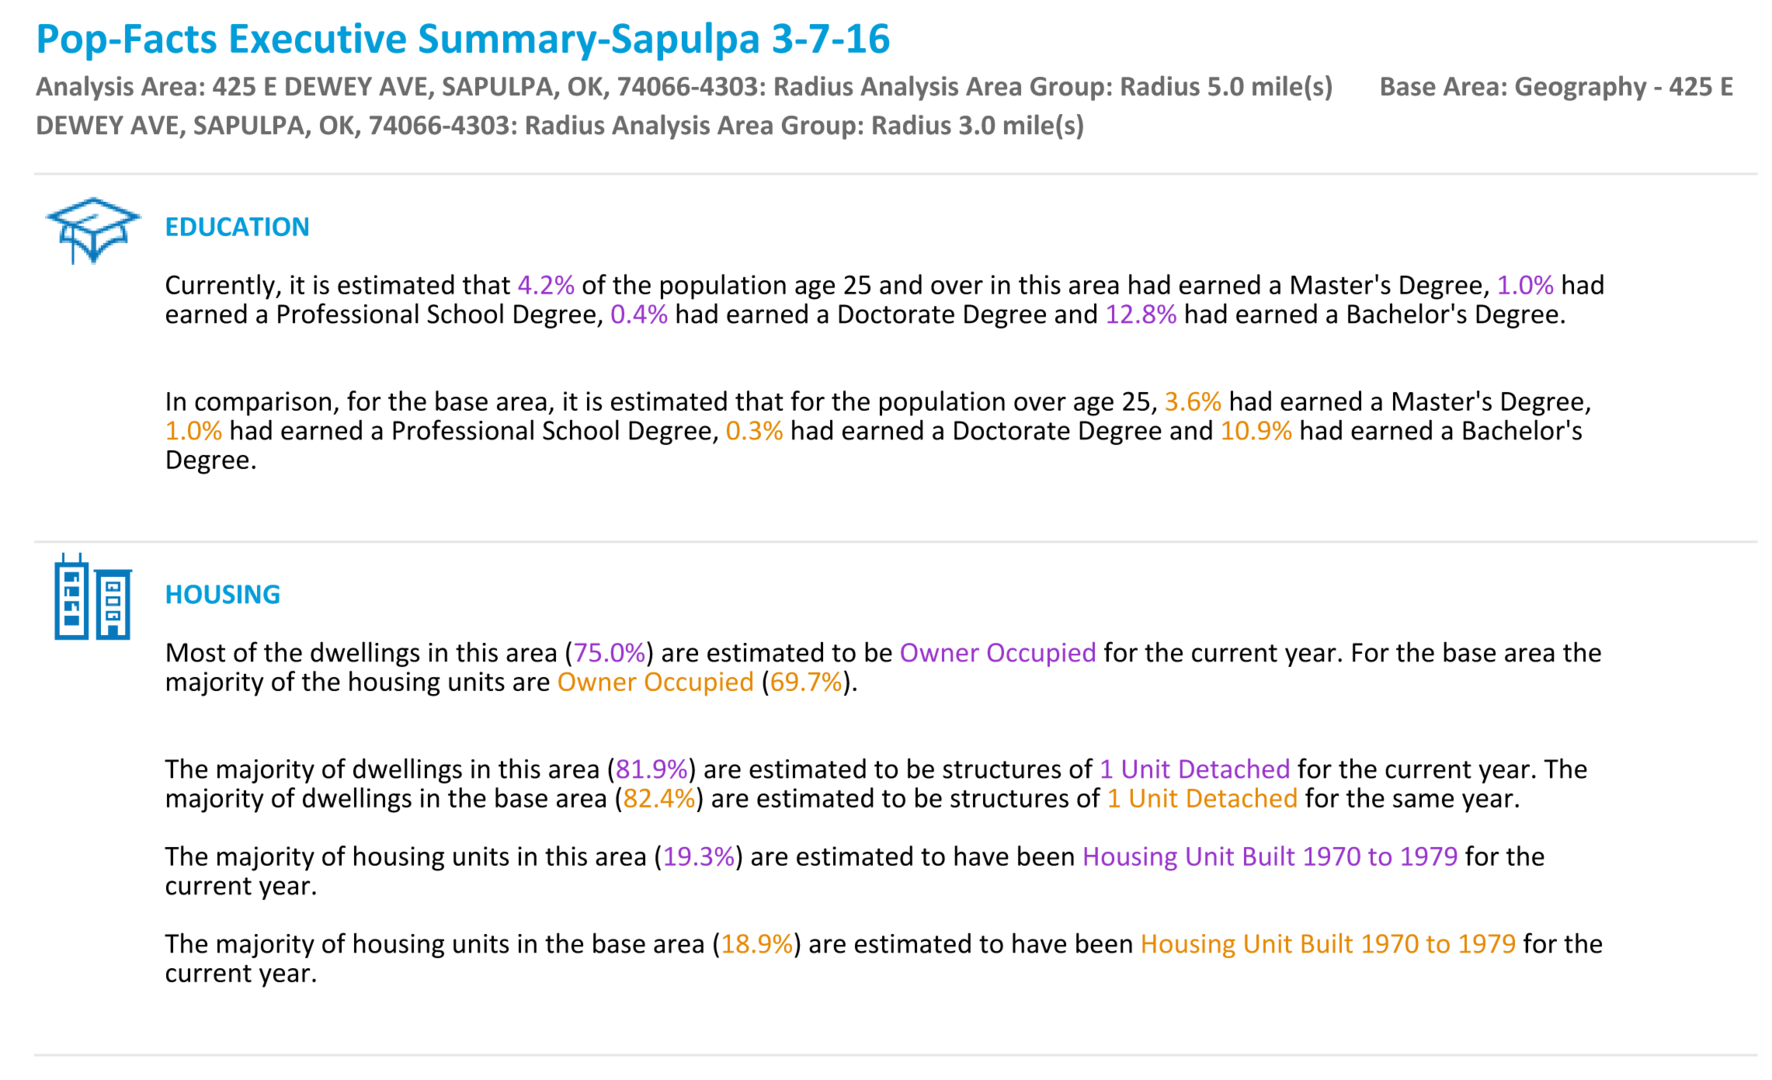 city of sapulpa education summary facts16